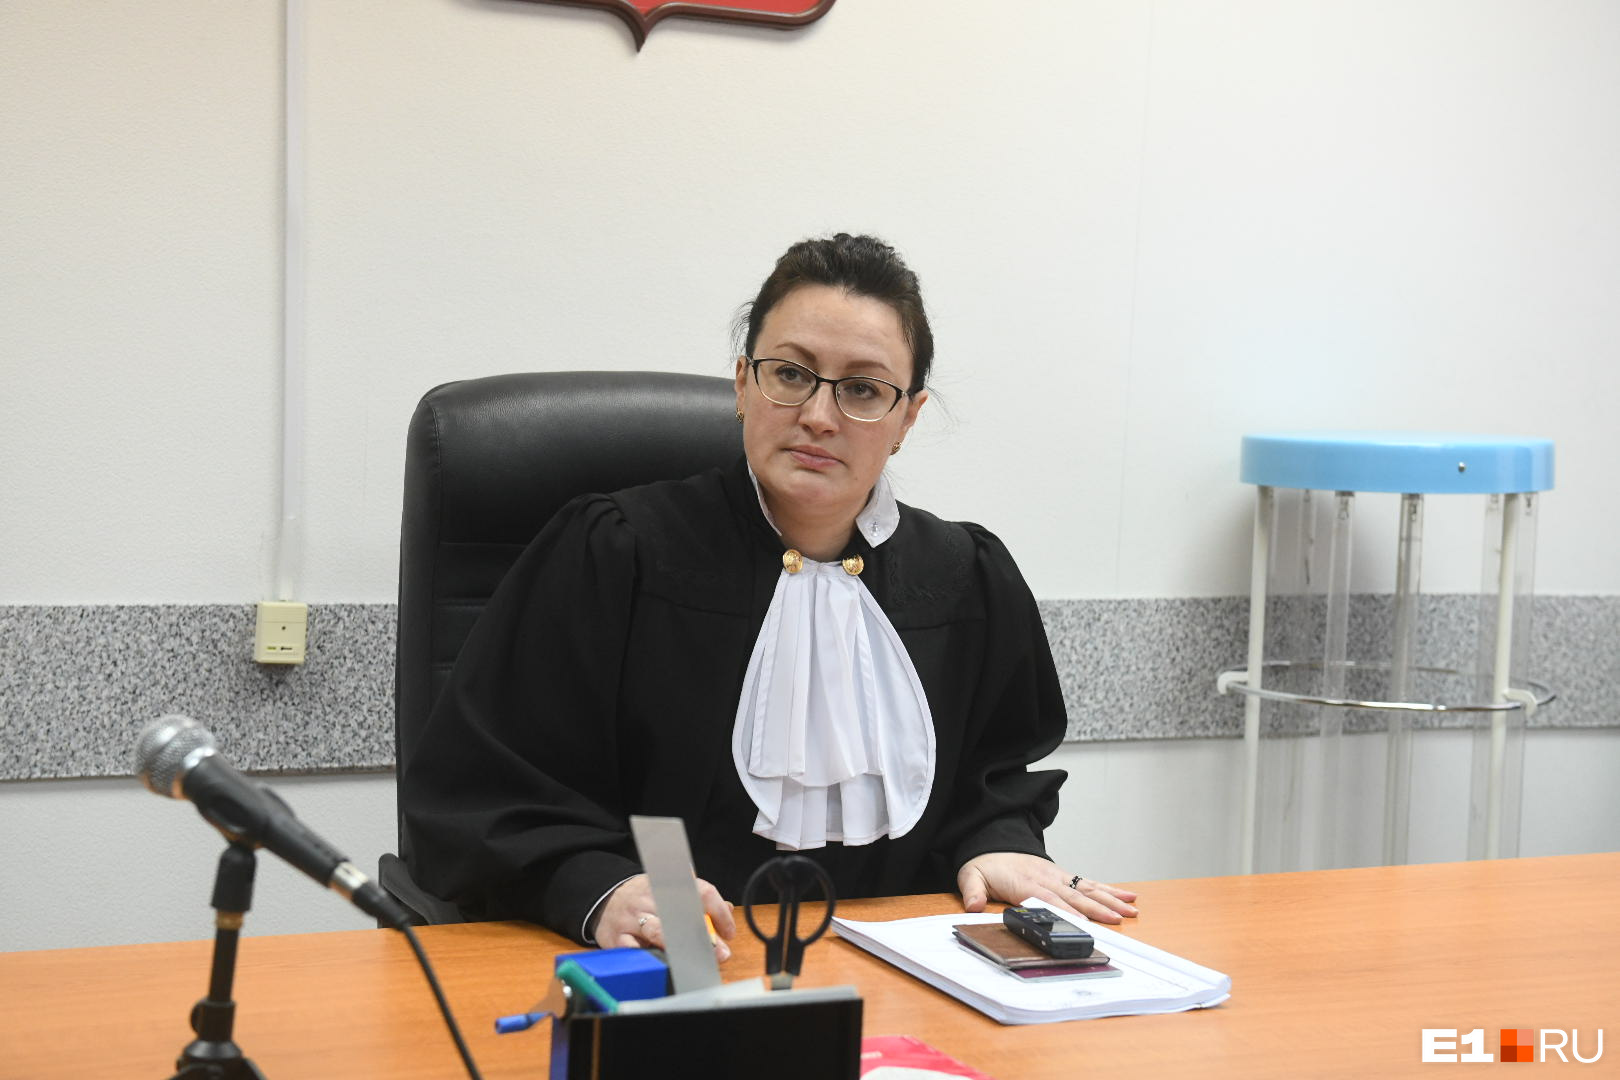 Судья Ханкевич решила закрыть заседание от журналистов